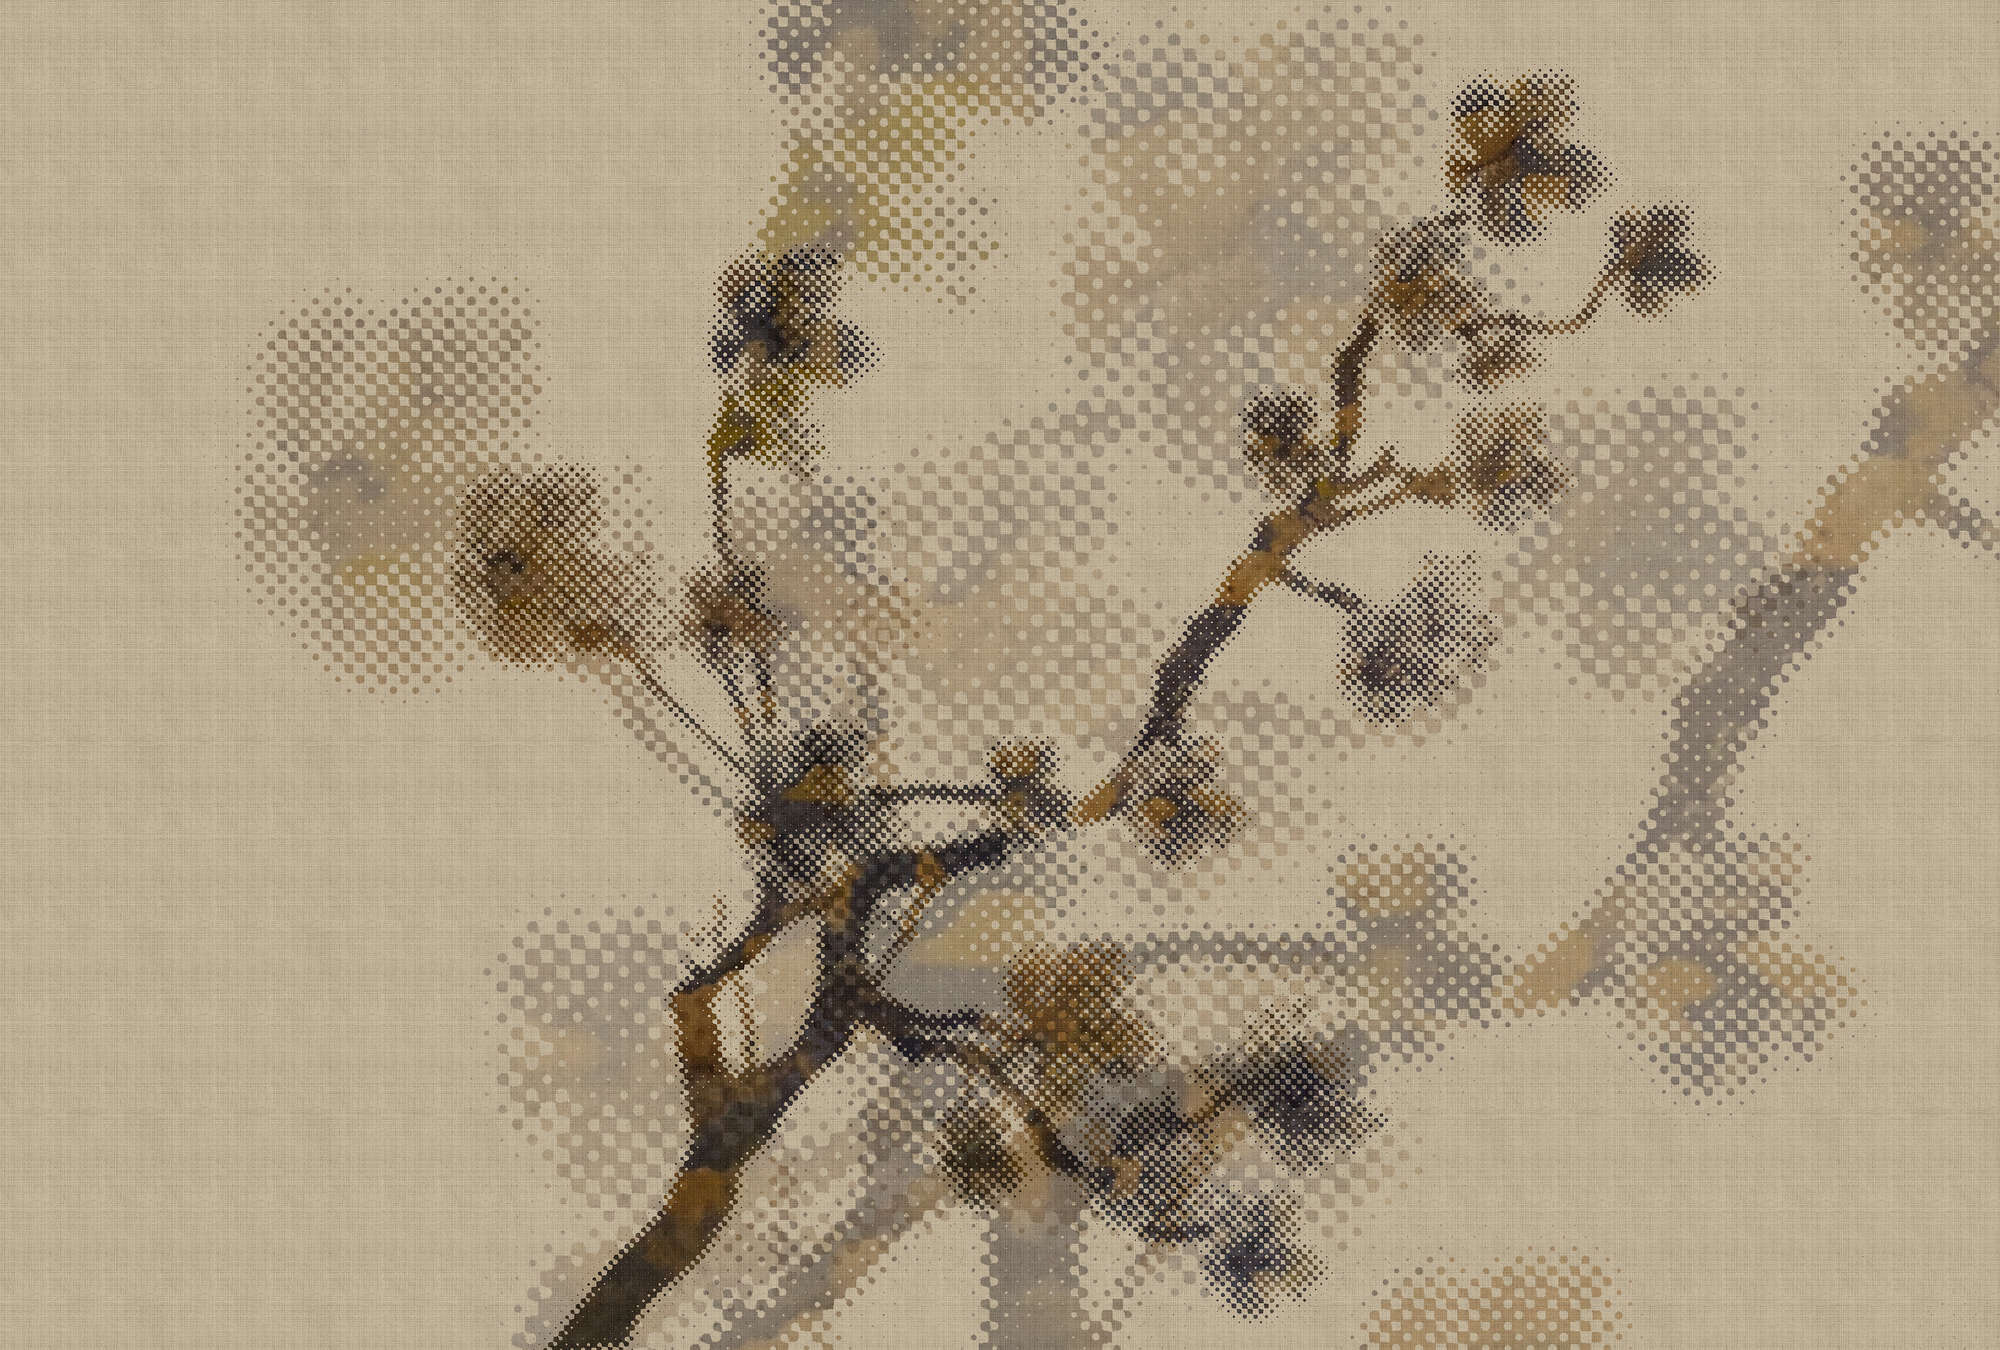             Twigs 2 - Fotobehang in natuurlijke linnenstructuur met takkenmotief & pixeldessin - Beige | Matglanzend vlies
        